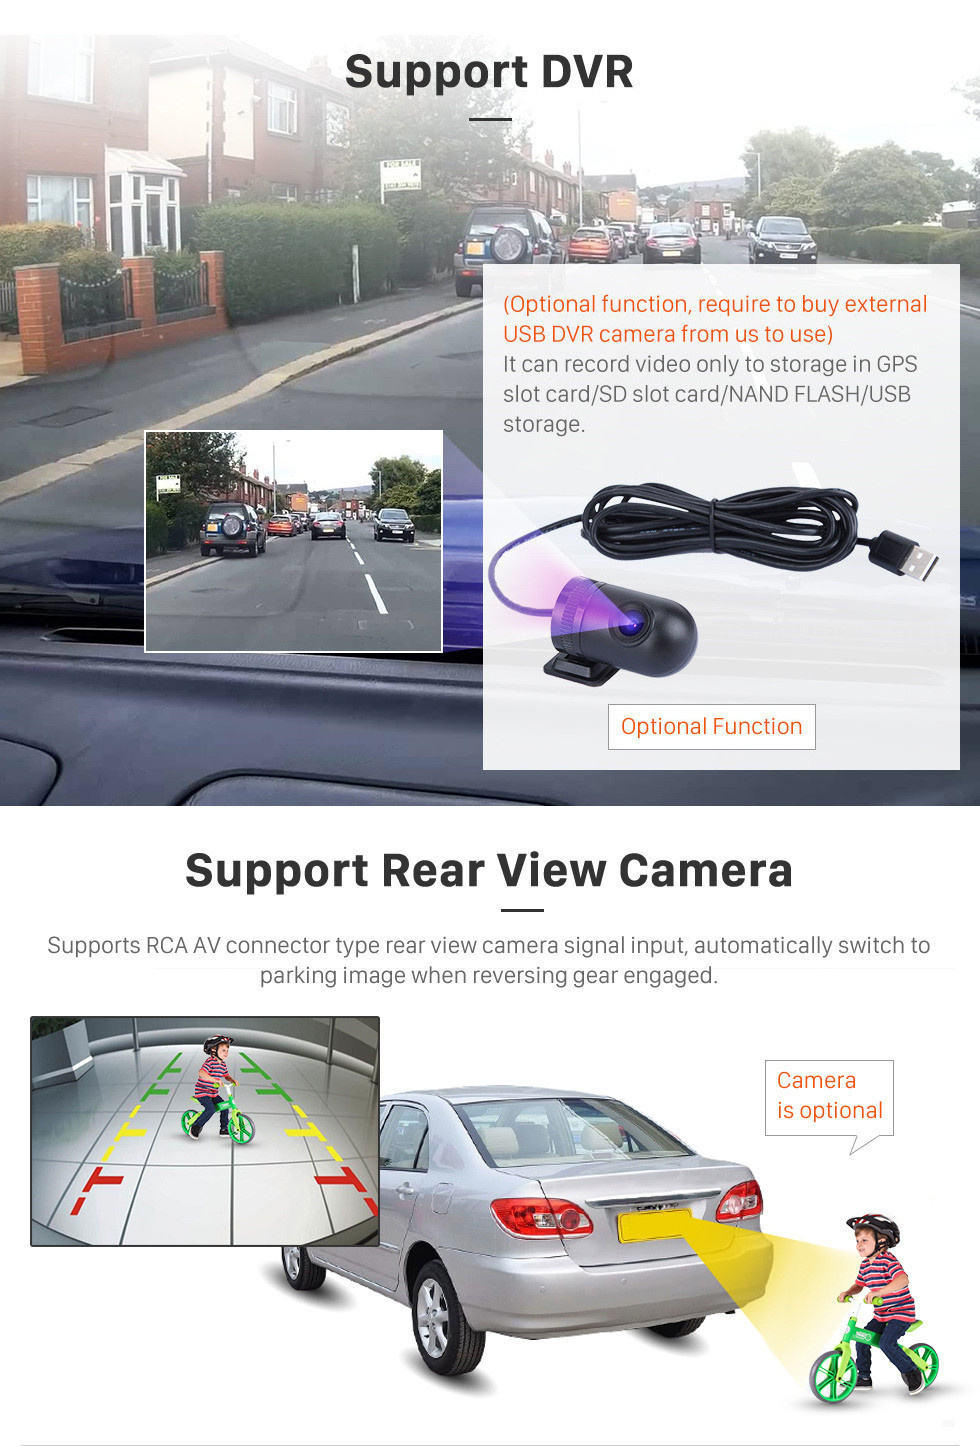 Seicane Radio de navegación GPS Android 11.0 de 10.1 pulgadas para 2018 Toyota Prado Bluetooth HD Pantalla táctil AUX Carplay compatible Cámara de respaldo